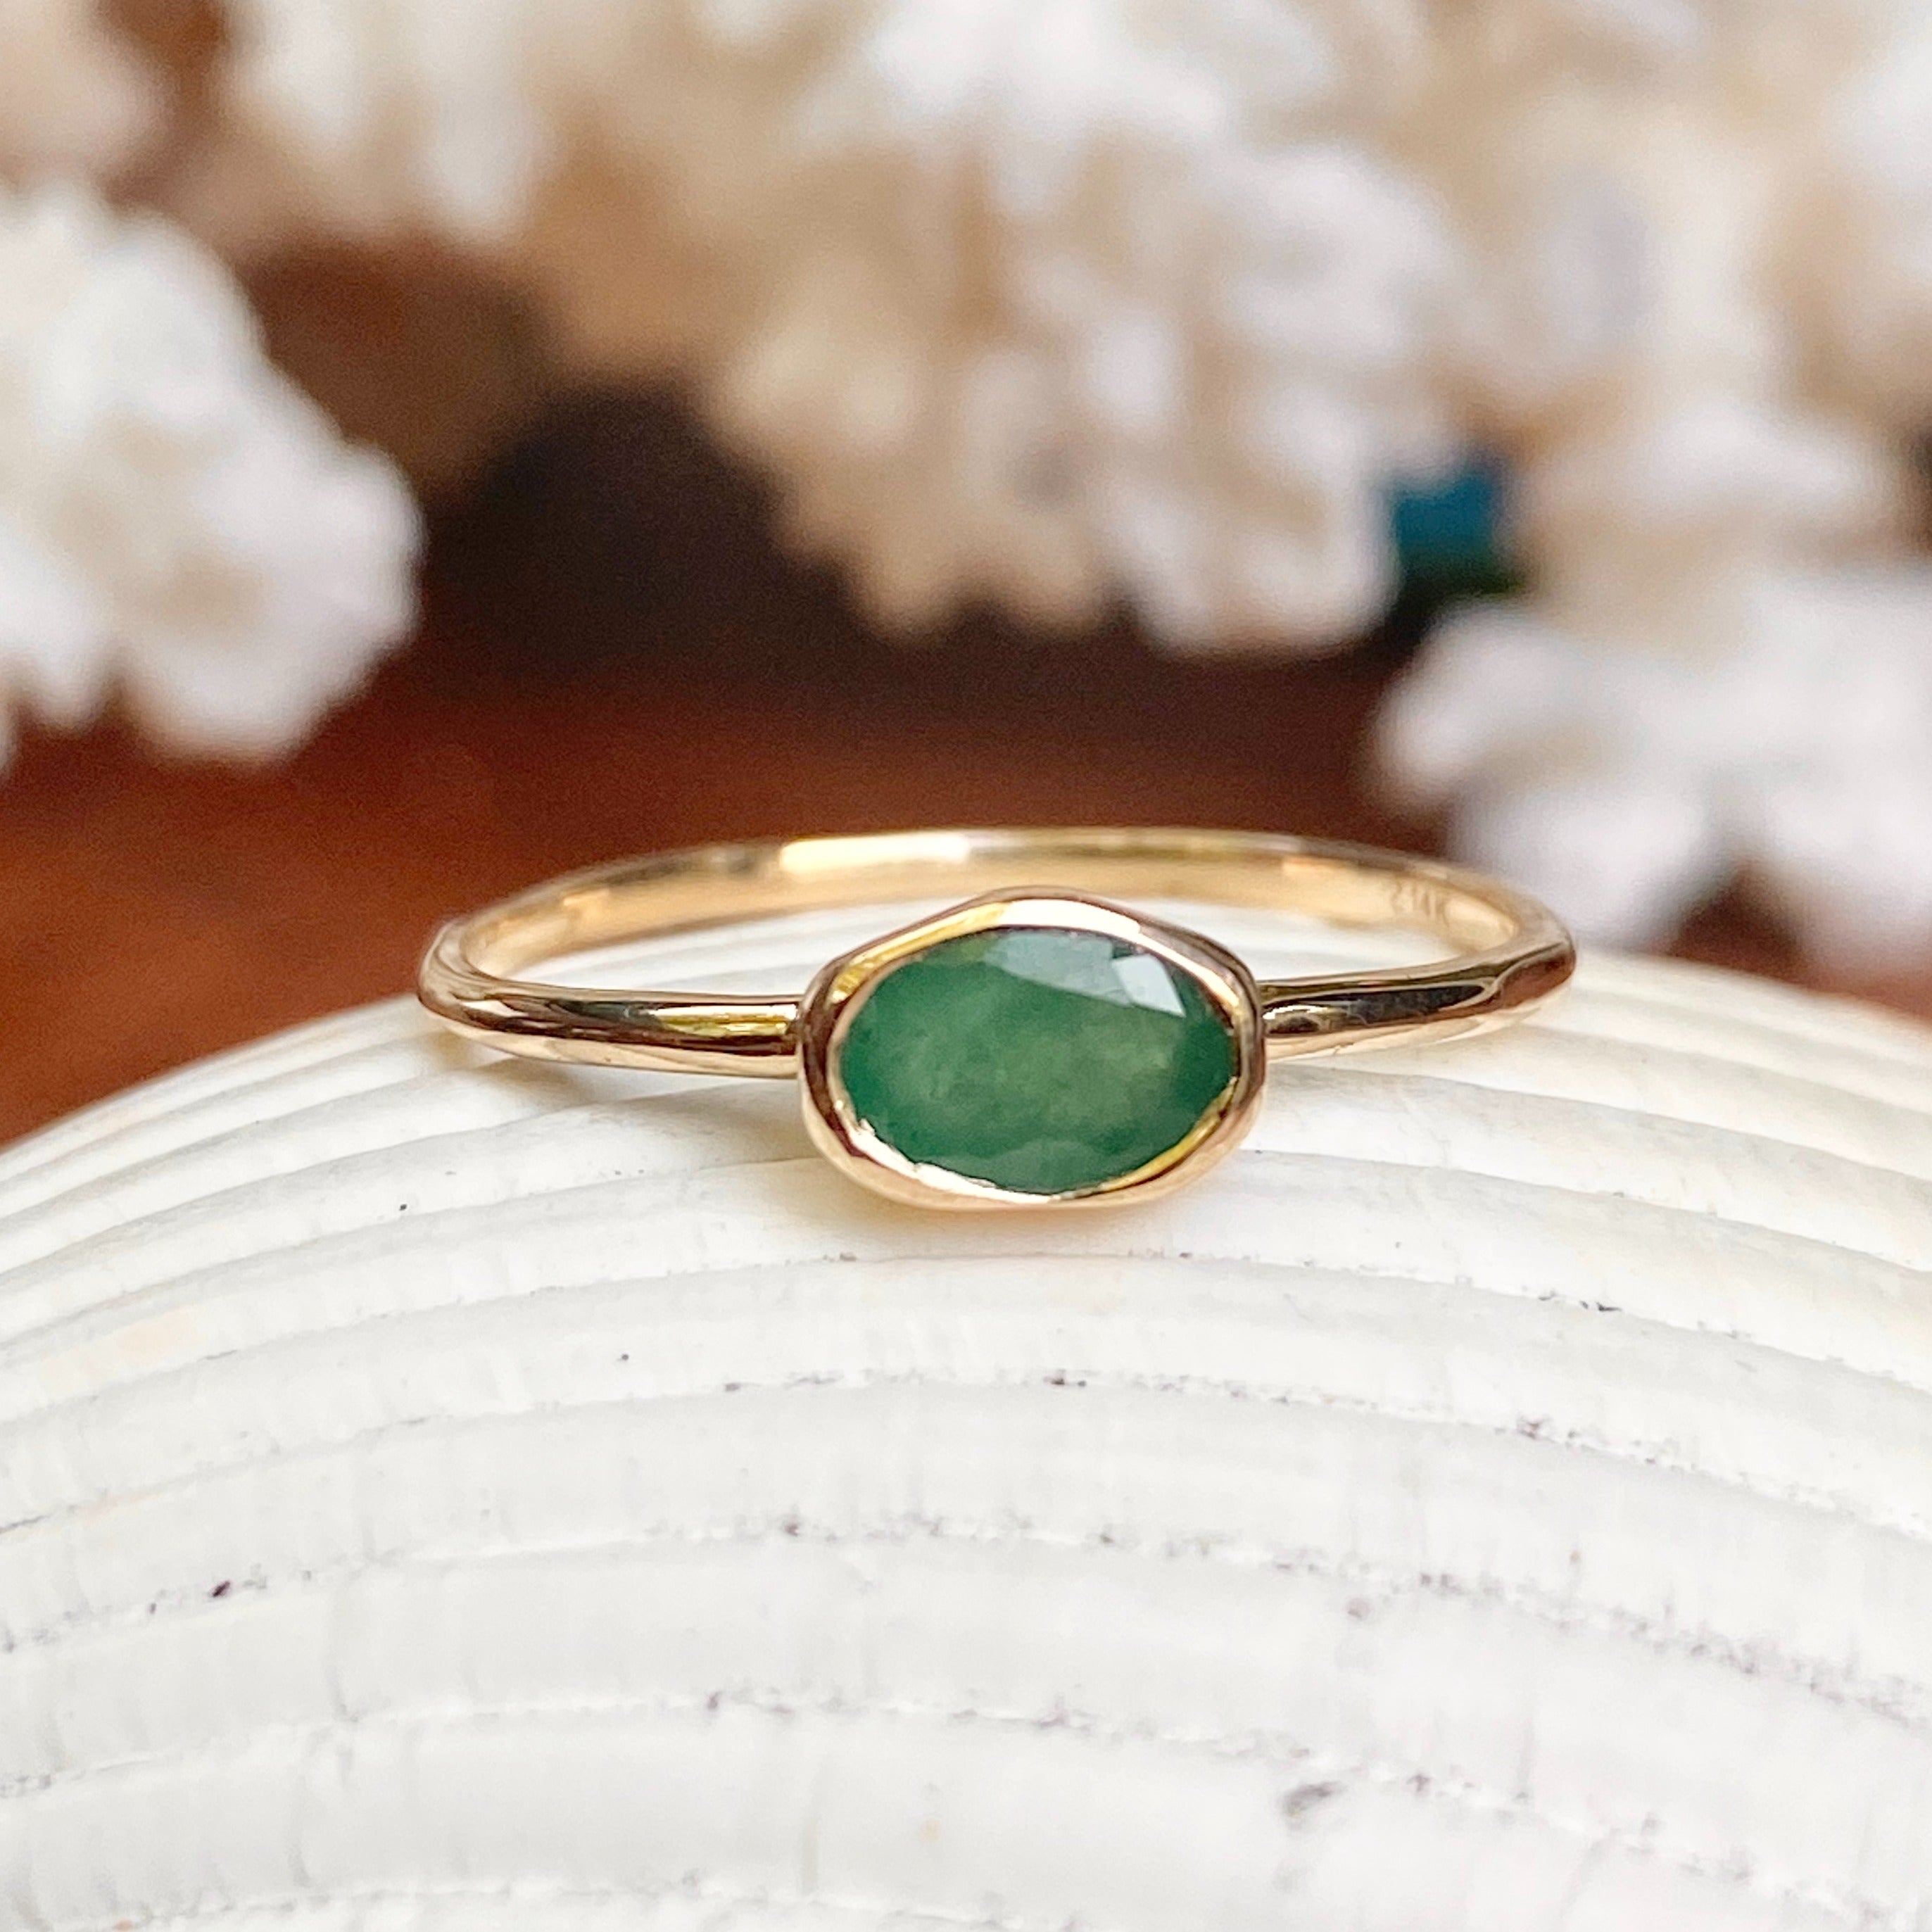 Buy Oval Emerald Ring Online | H.k.s Jewellers - JewelFlix